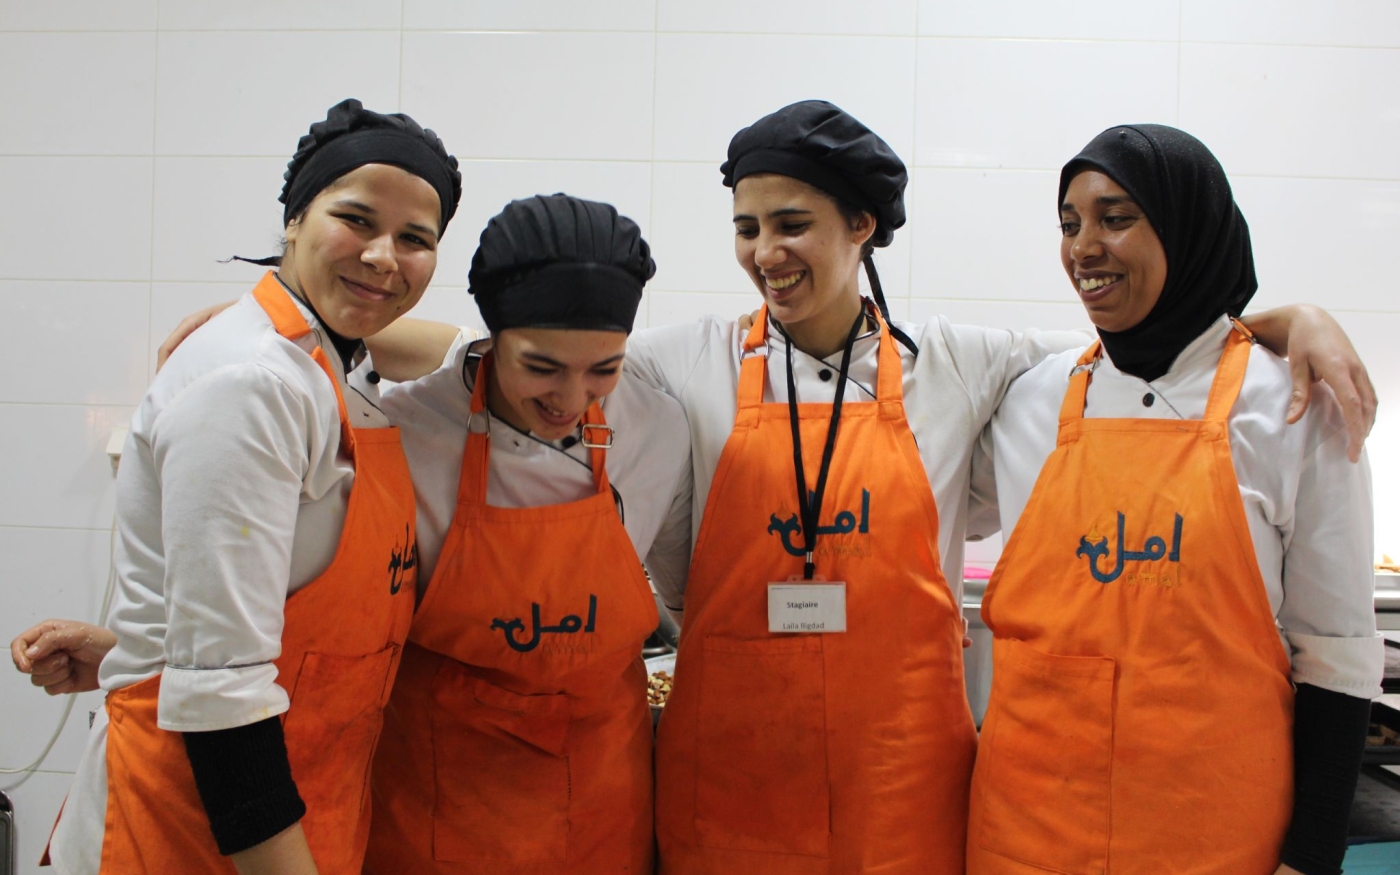 Plus de 300 femmes ont été formées à la cuisine depuis l’ouverture du centre en 2012, ce qui a débouché sur des emplois pour beaucoup (Amal Training Centre and Restaurant)